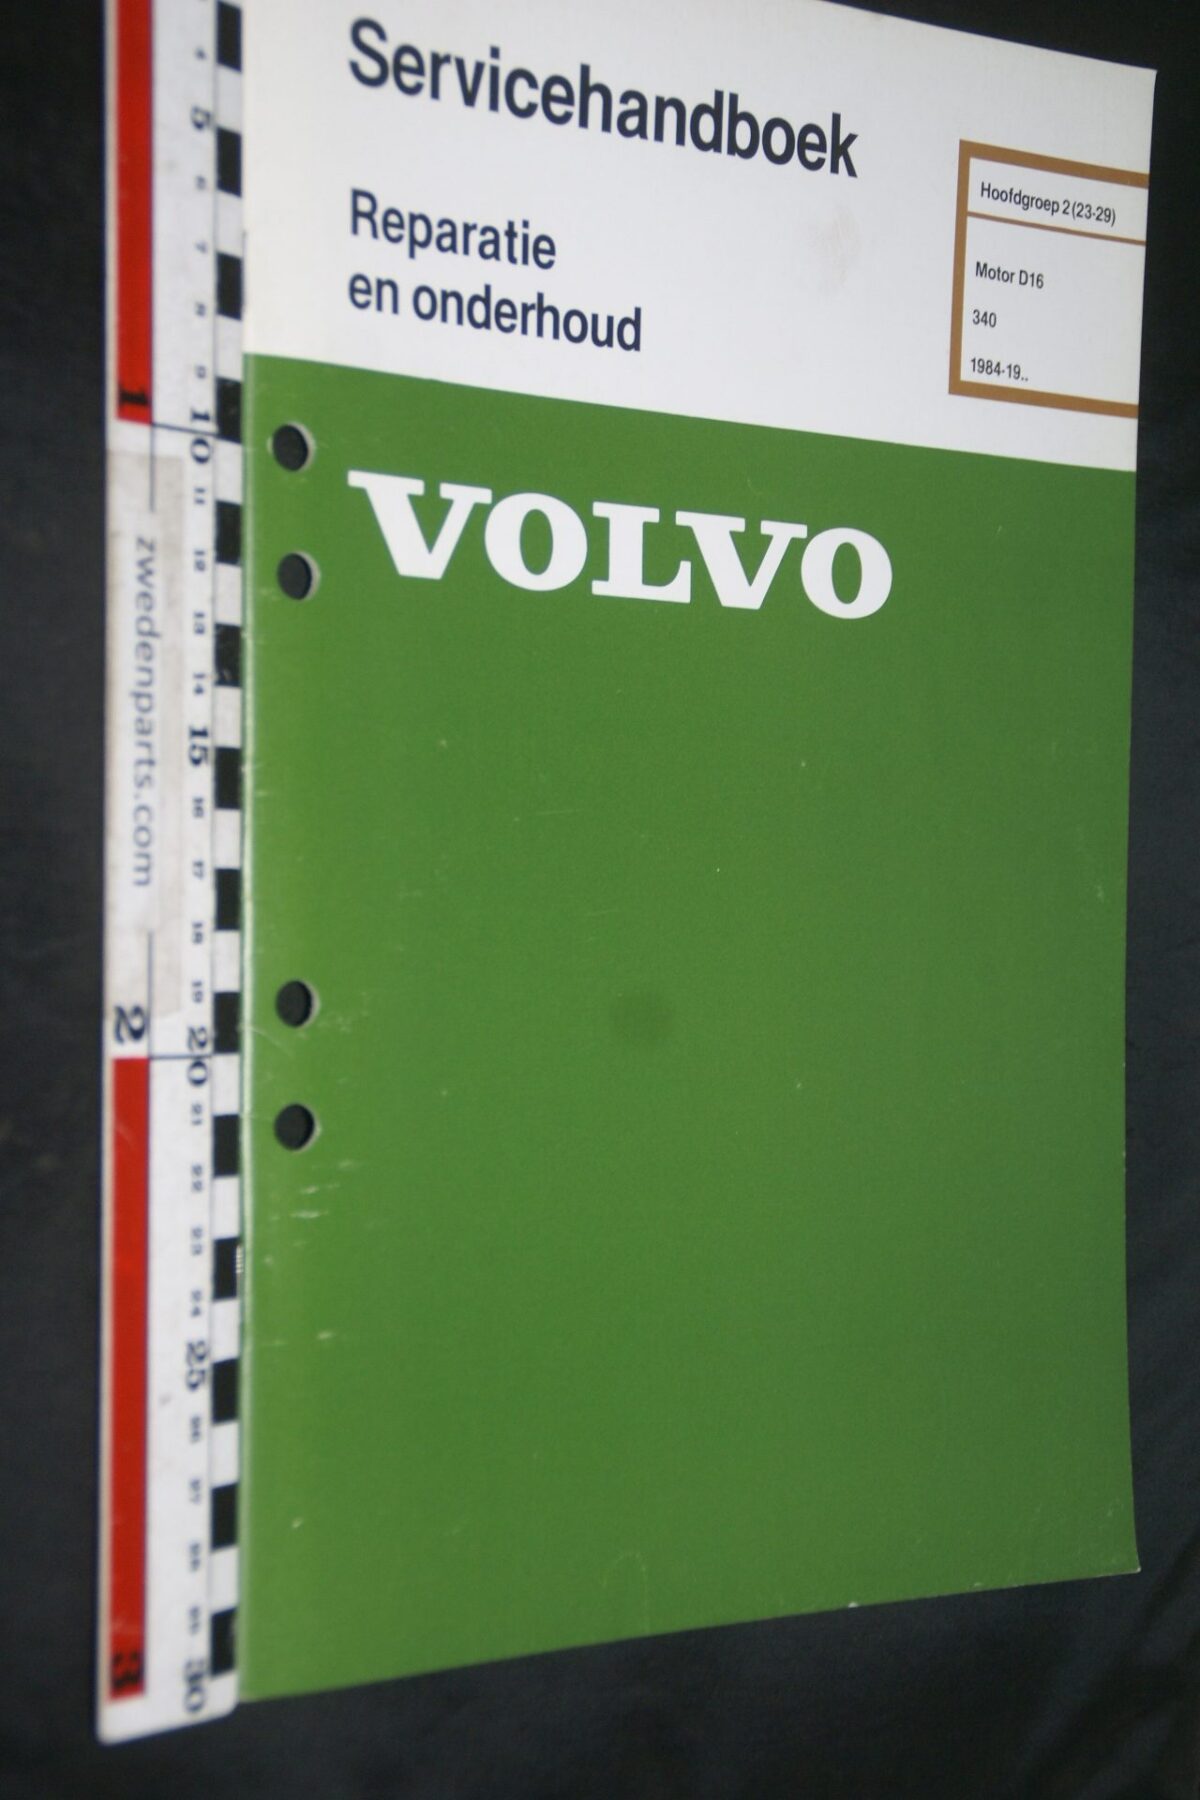 DSC07232 1984 origineel Volvo 340 servicehandboek  2(23-29) motor D16 1 van 900 TP 35213-1